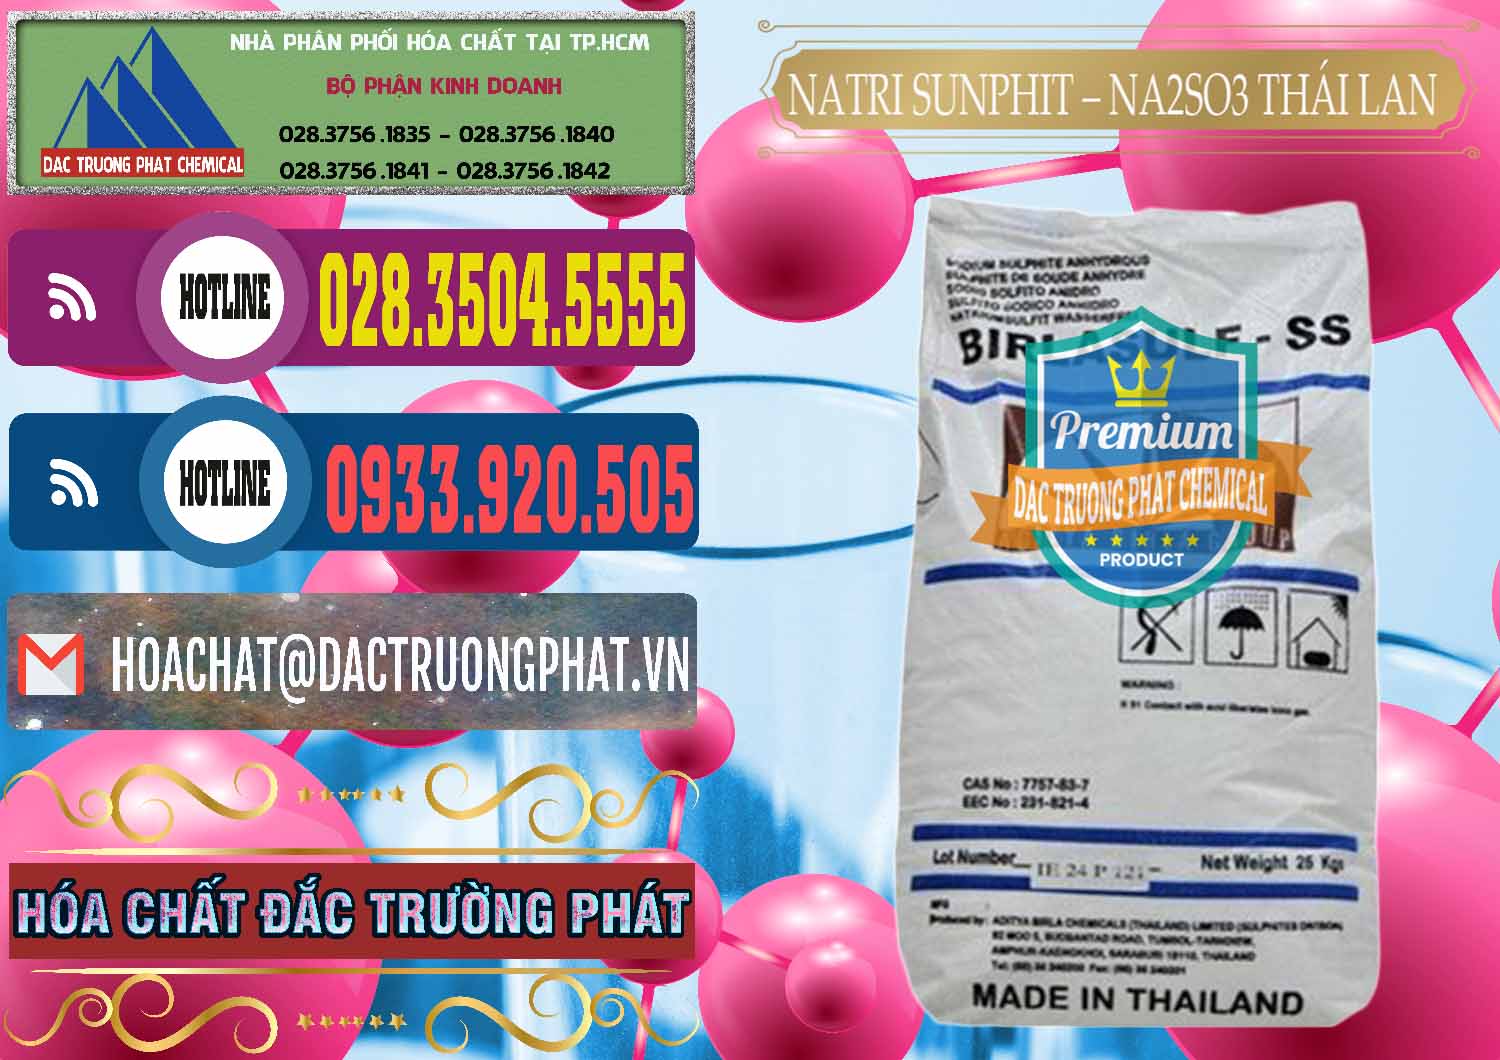 Đơn vị bán và phân phối Natri Sunphit - NA2SO3 Thái Lan - 0105 - Đơn vị kinh doanh & cung cấp hóa chất tại TP.HCM - muabanhoachat.com.vn